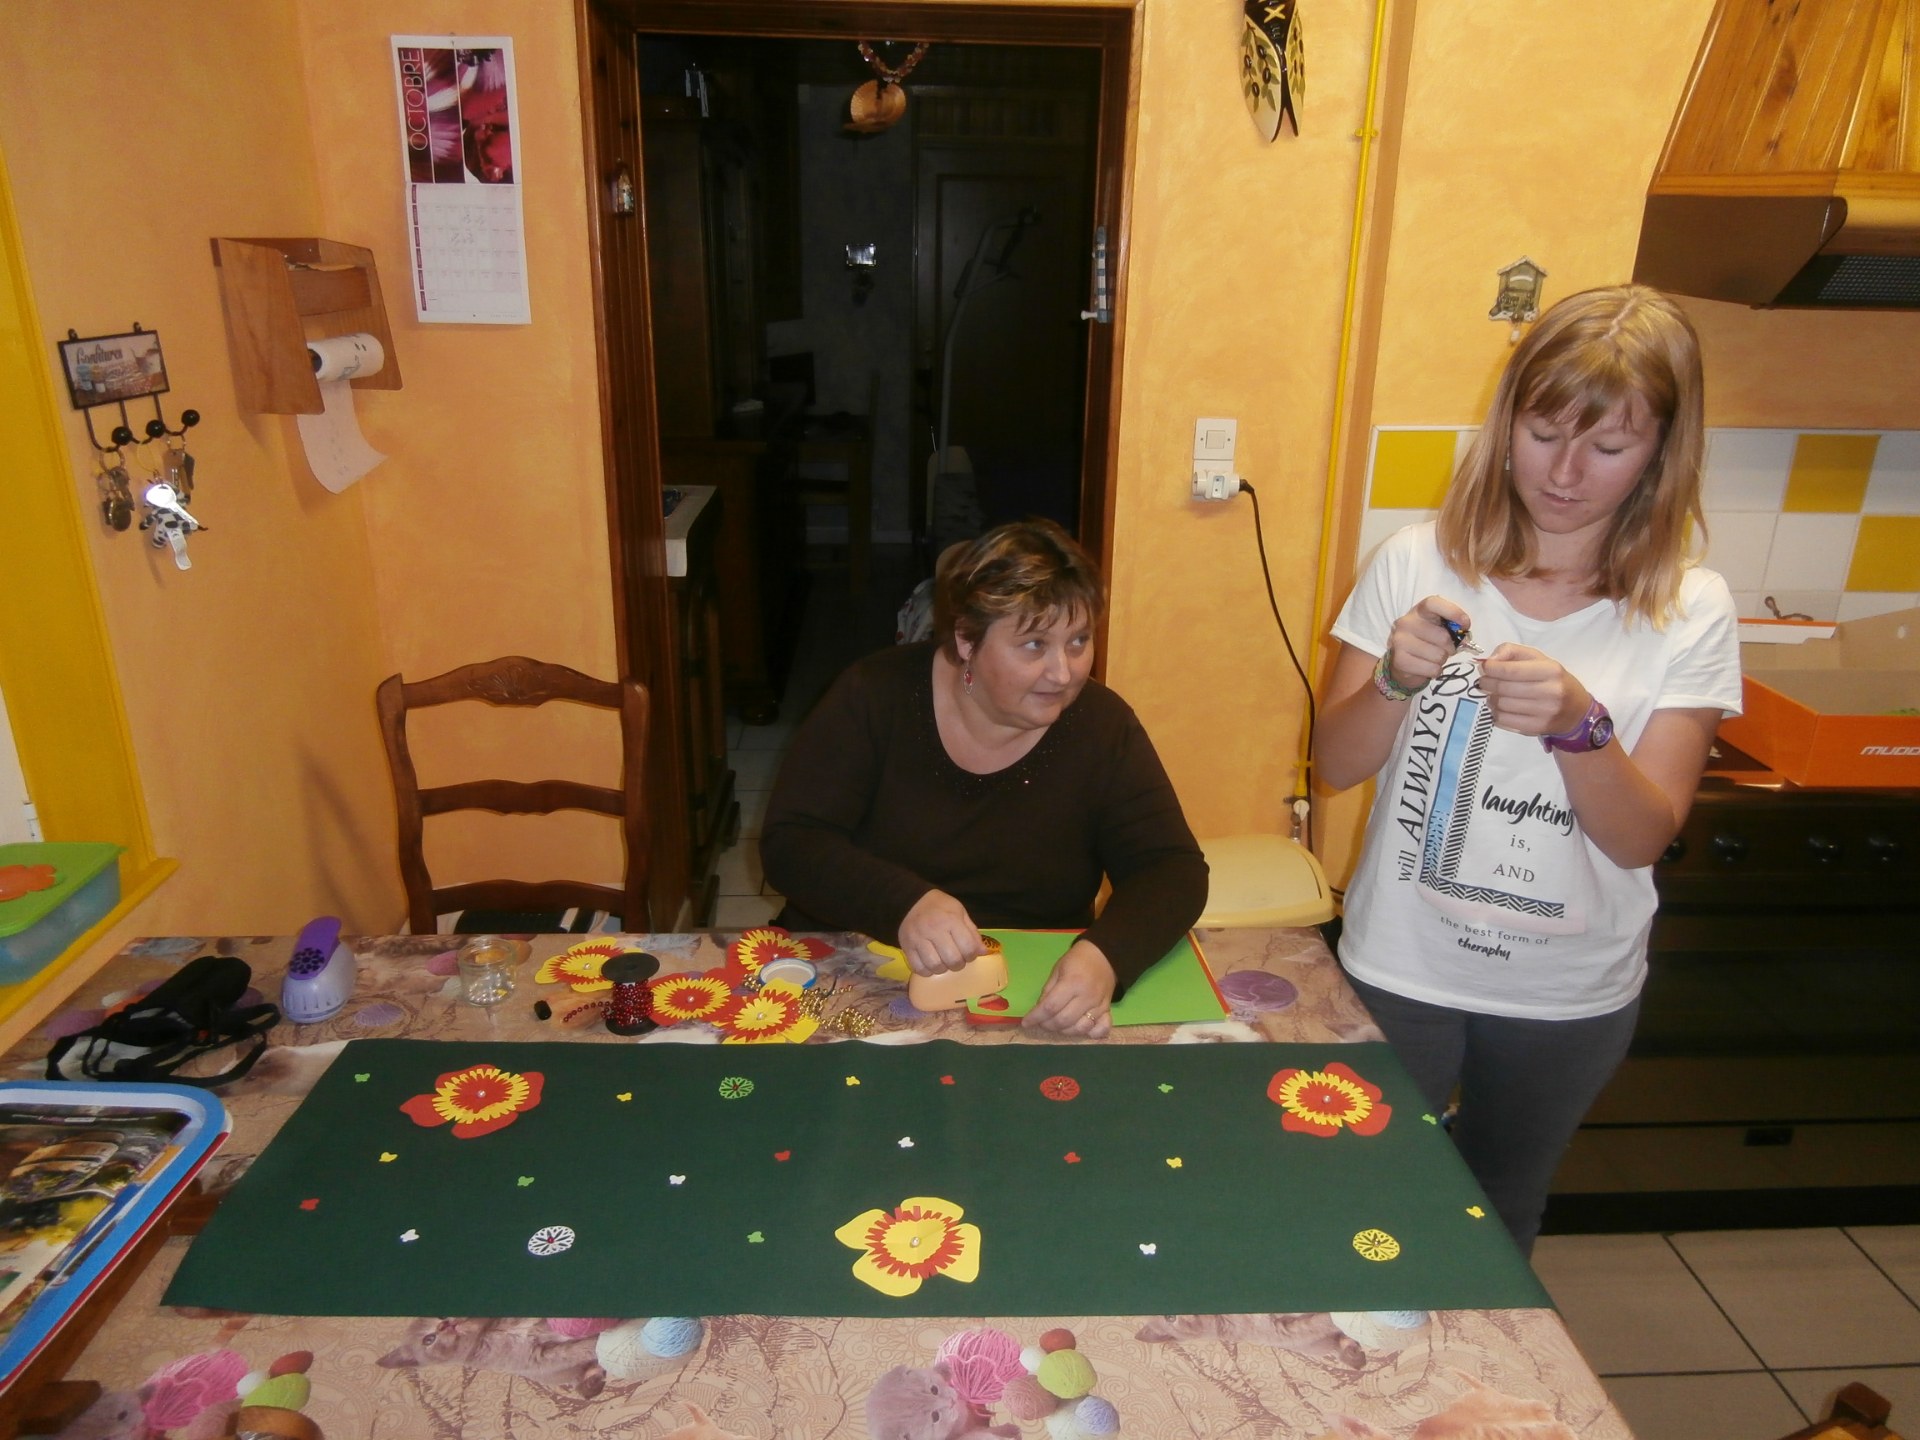 Toute une équipe a participé à la préparation et notamment Rachel et sa maman Christelle, qui ont décoré les tables